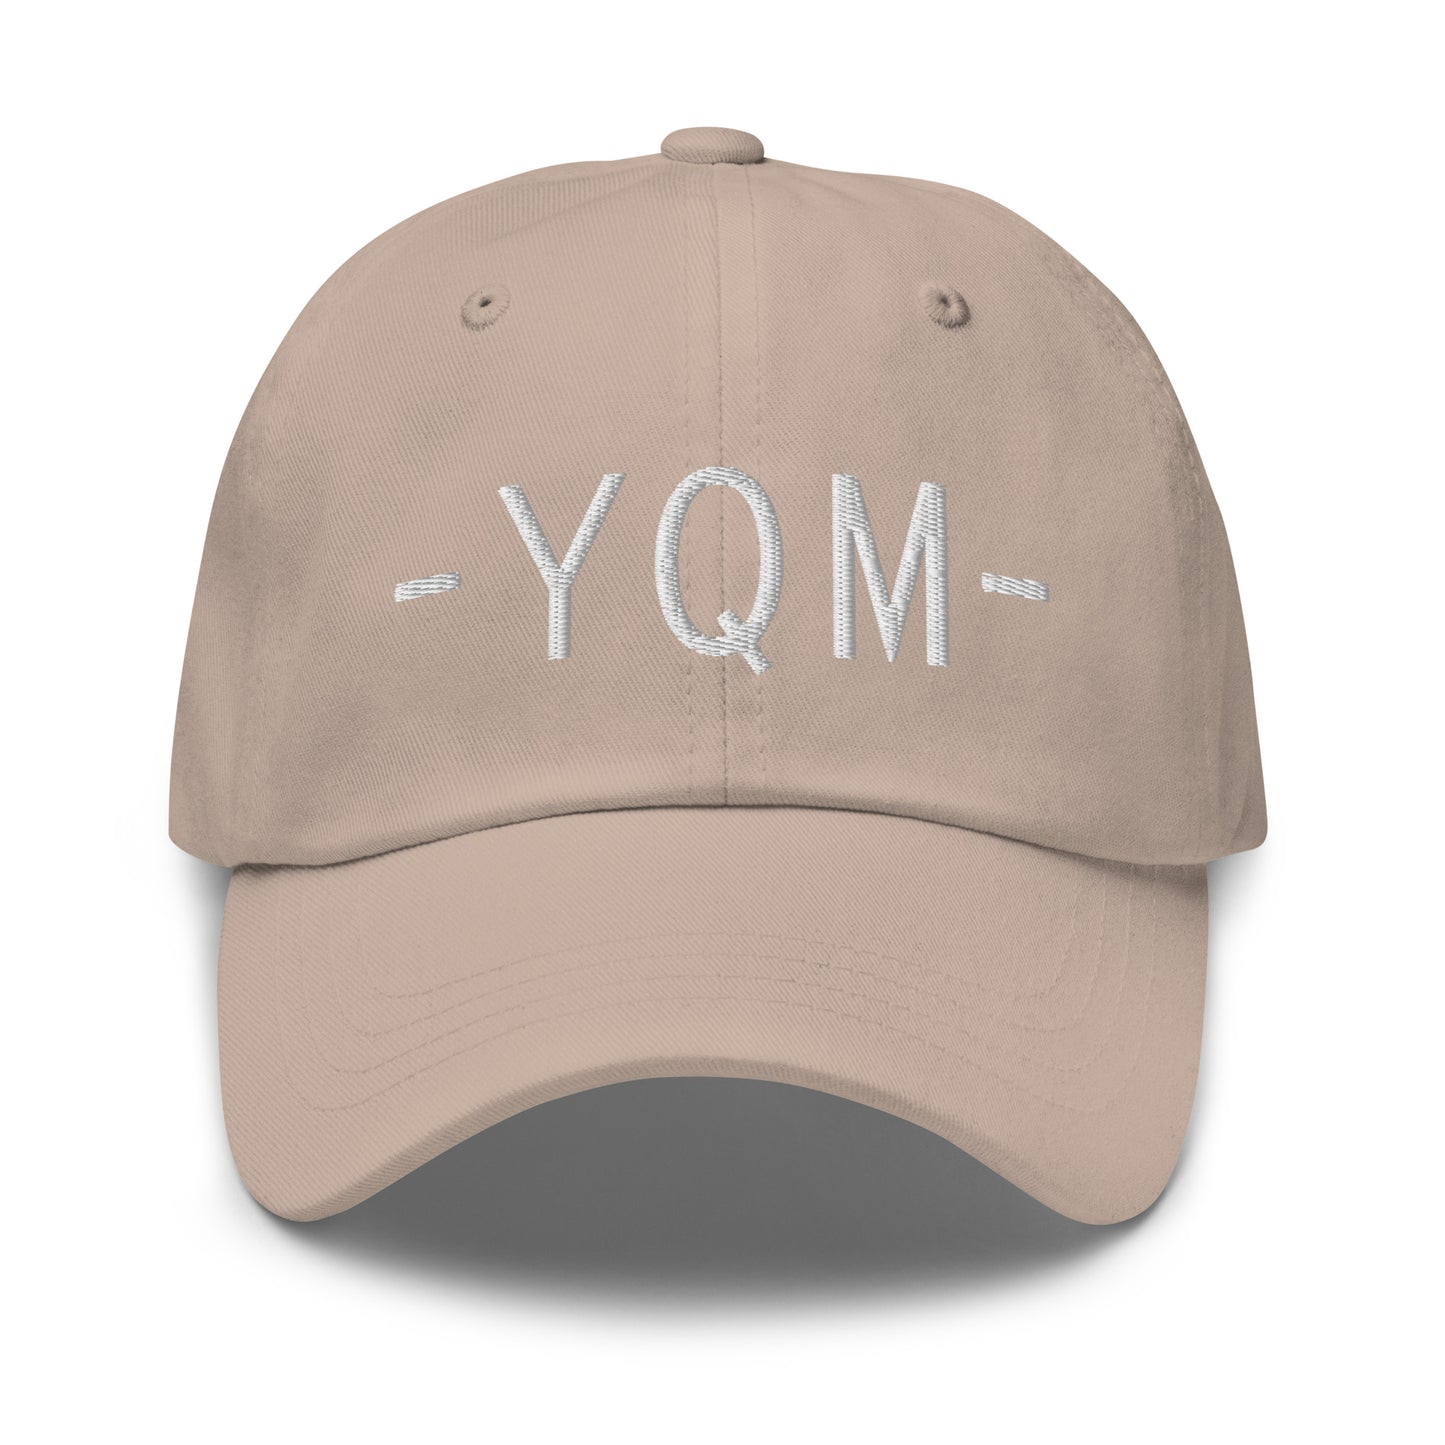 Souvenir Baseball Cap - White • YQM Moncton • YHM Designs - Image 23